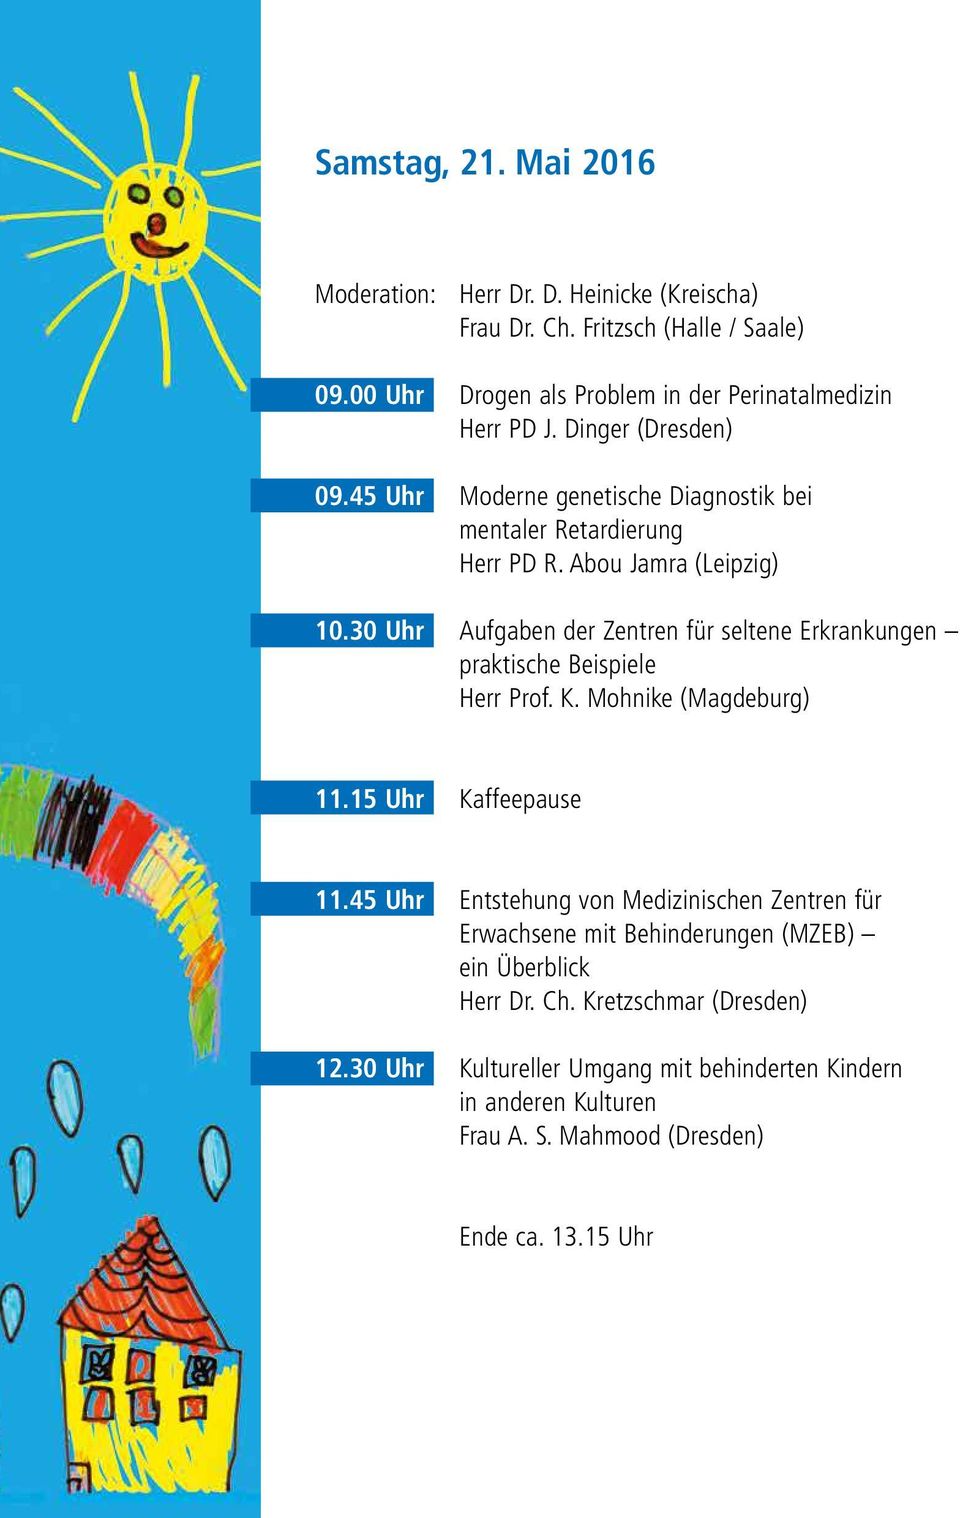 30 Uhr Aufgaben der Zentren für seltene Erkrankungen praktische Beispiele Herr Prof. K. Mohnike (Magdeburg) 11.15 Uhr Kaffeepause 11.